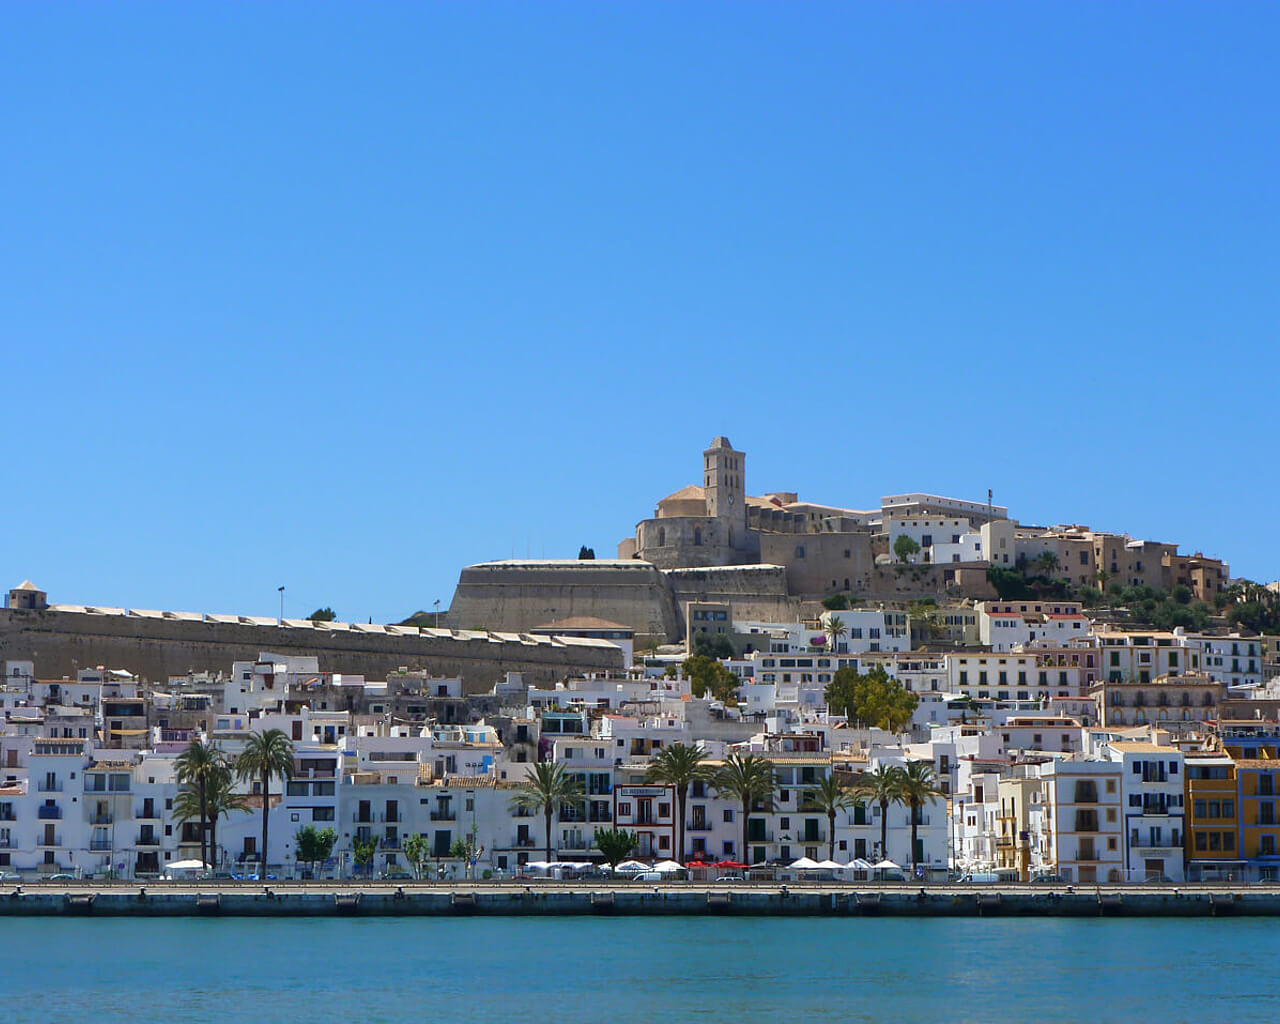 Voyages aux Iles Baléares, Ibiza